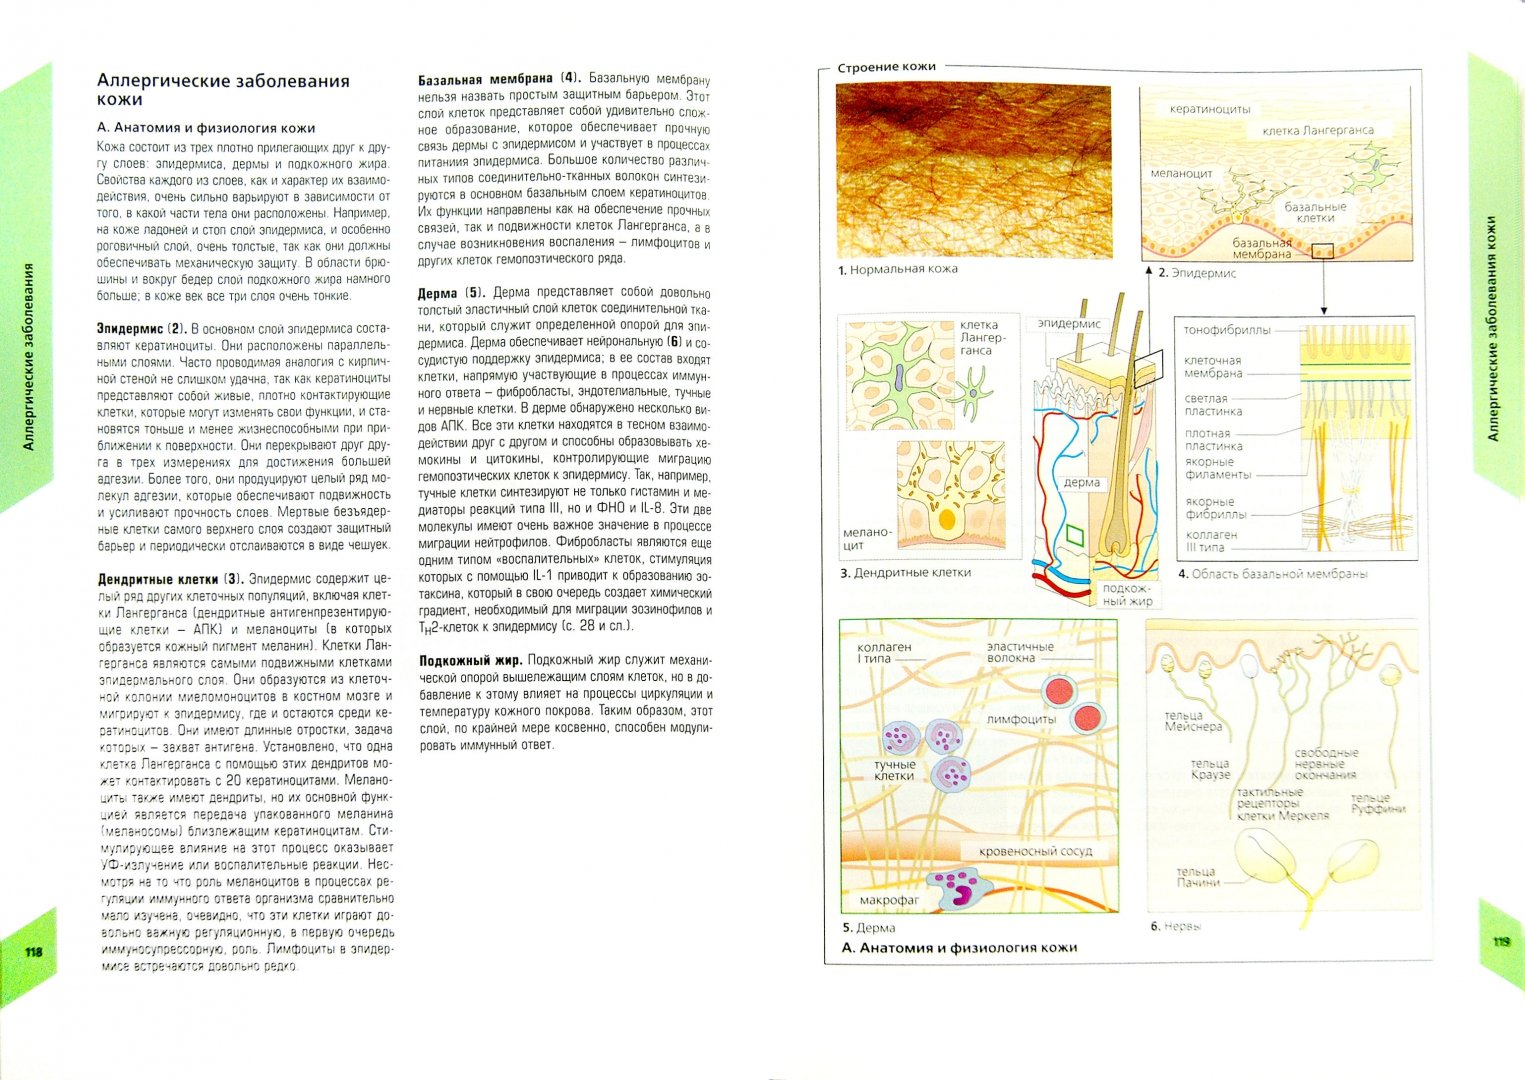 Иллюстрация 1 из 21 для Наглядная аллергология - Рекен, Бургдорф, Греверс | Лабиринт - книги. Источник: Лабиринт